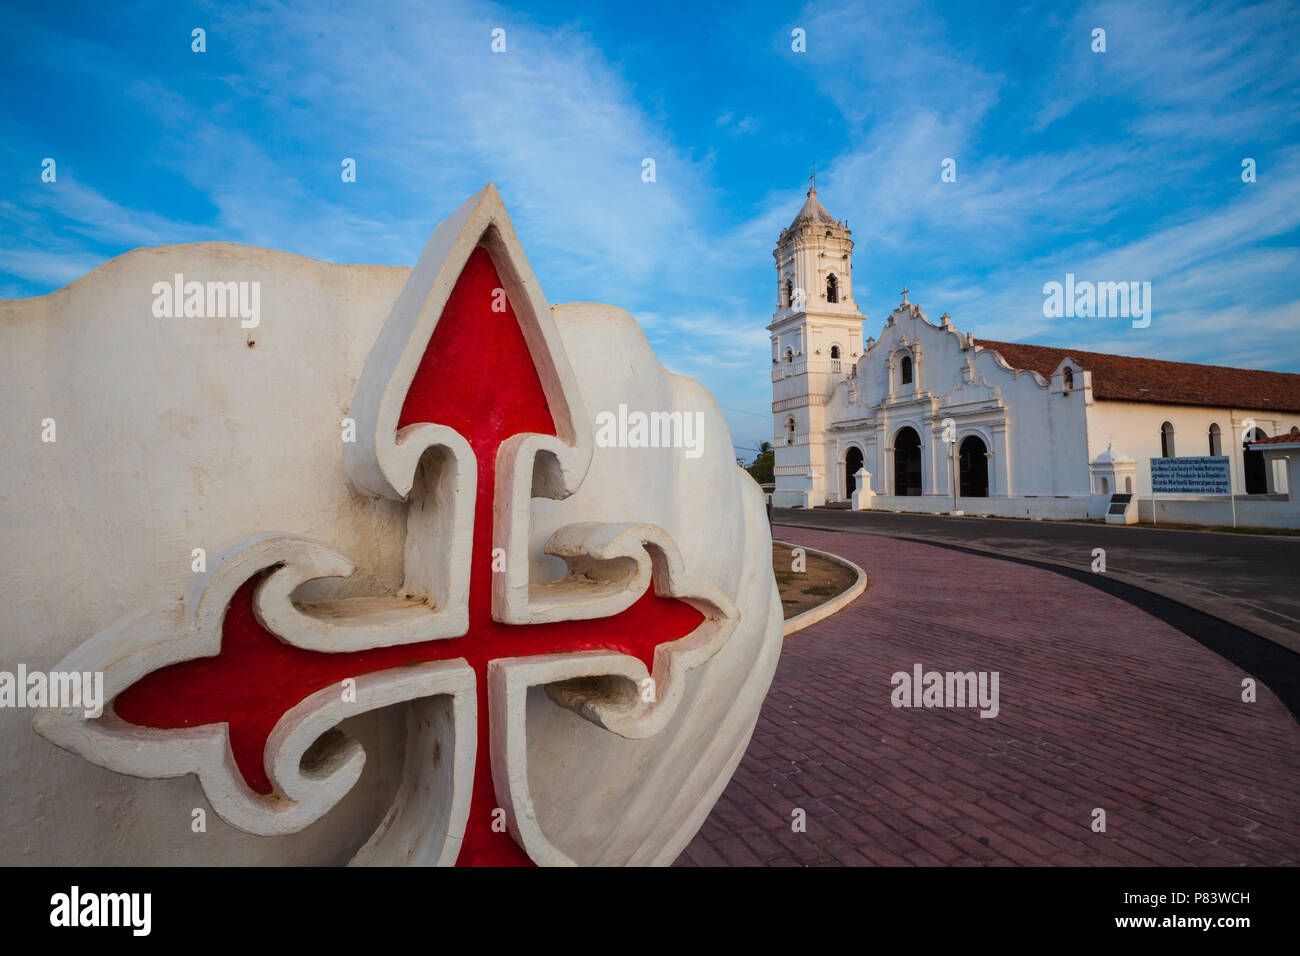 La belle église catholique dans le village de Nata, province de Cocle, République du Panama. Banque D'Images